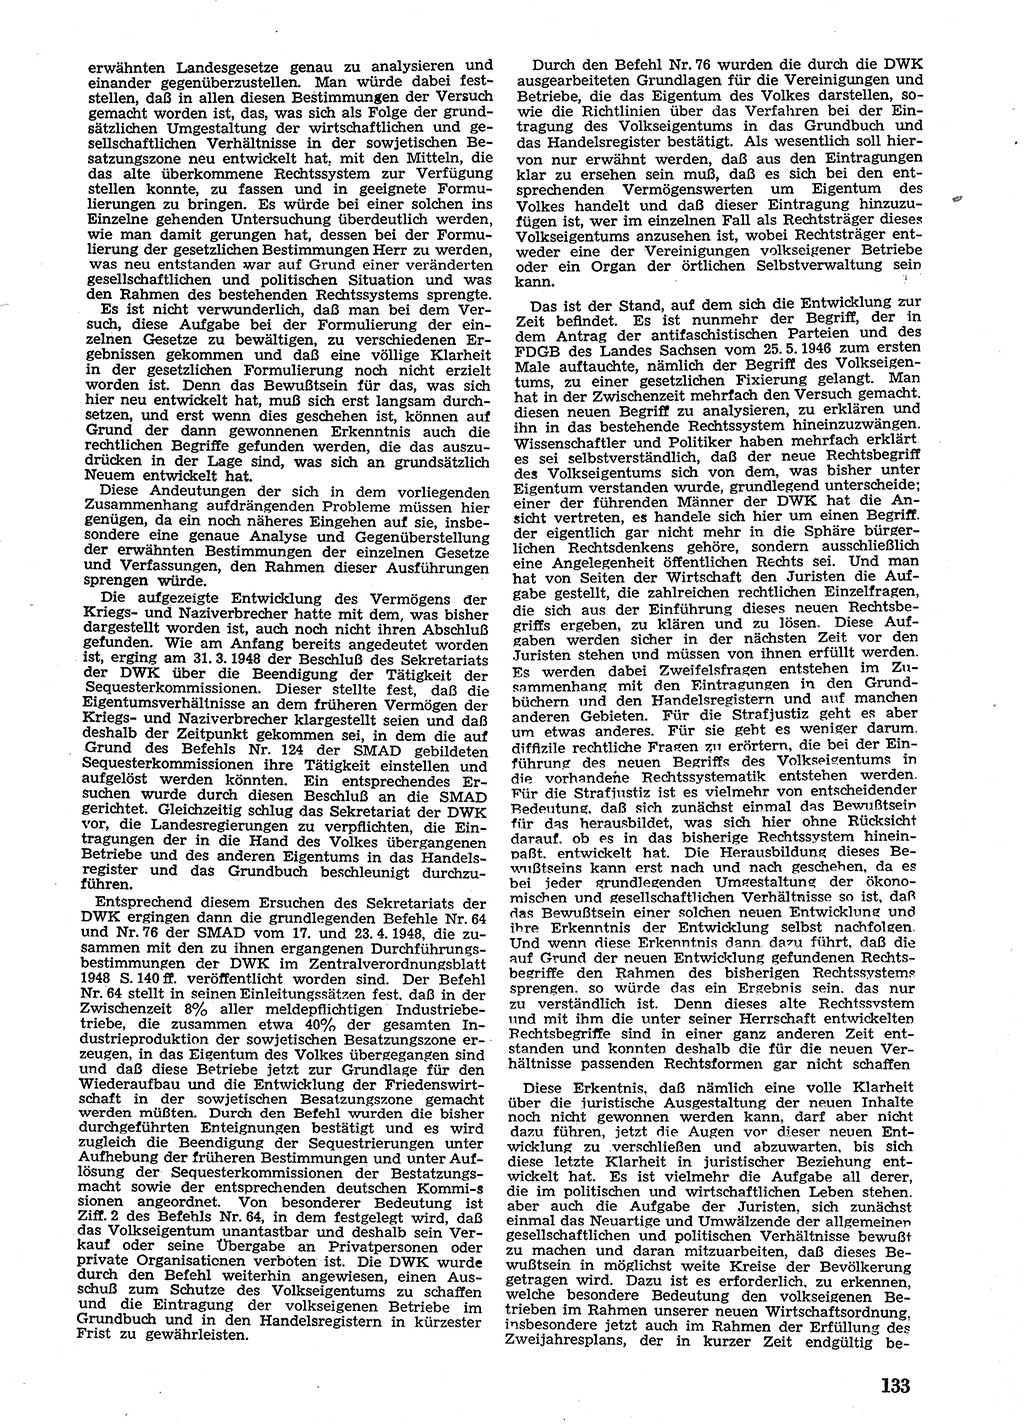 Neue Justiz (NJ), Zeitschrift für Recht und Rechtswissenschaft [Sowjetische Besatzungszone (SBZ) Deutschland], 2. Jahrgang 1948, Seite 133 (NJ SBZ Dtl. 1948, S. 133)